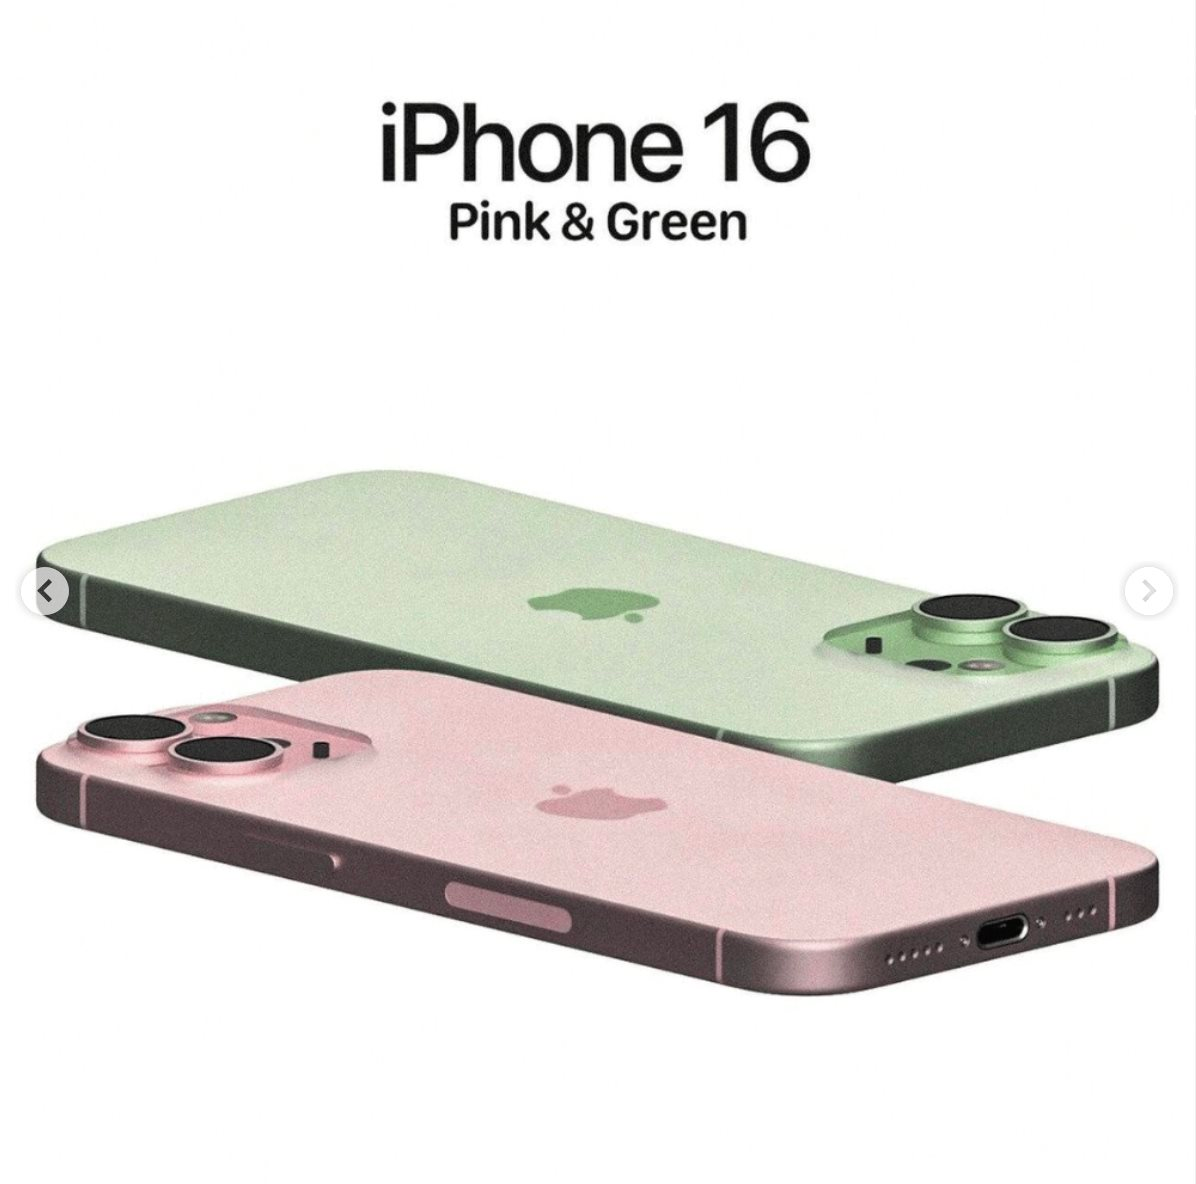 Ngắm iPhone 16 màu xanh lá cây - Ảnh 5.